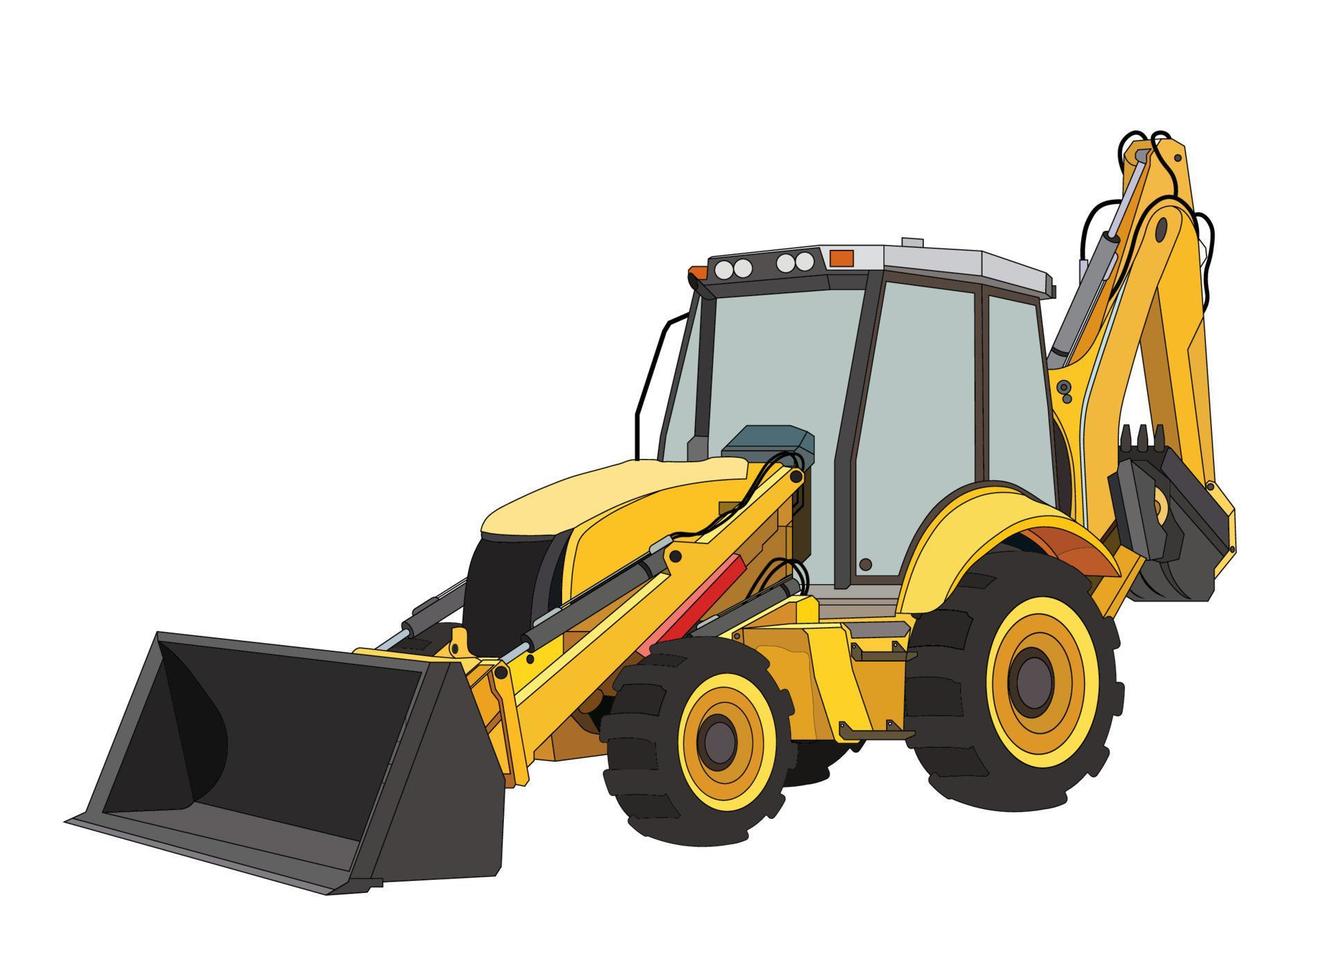 entreprenadmaskiner traktor i svarta och gula färger. industriella maskiner och utrustning. isolerade vektor på vitt